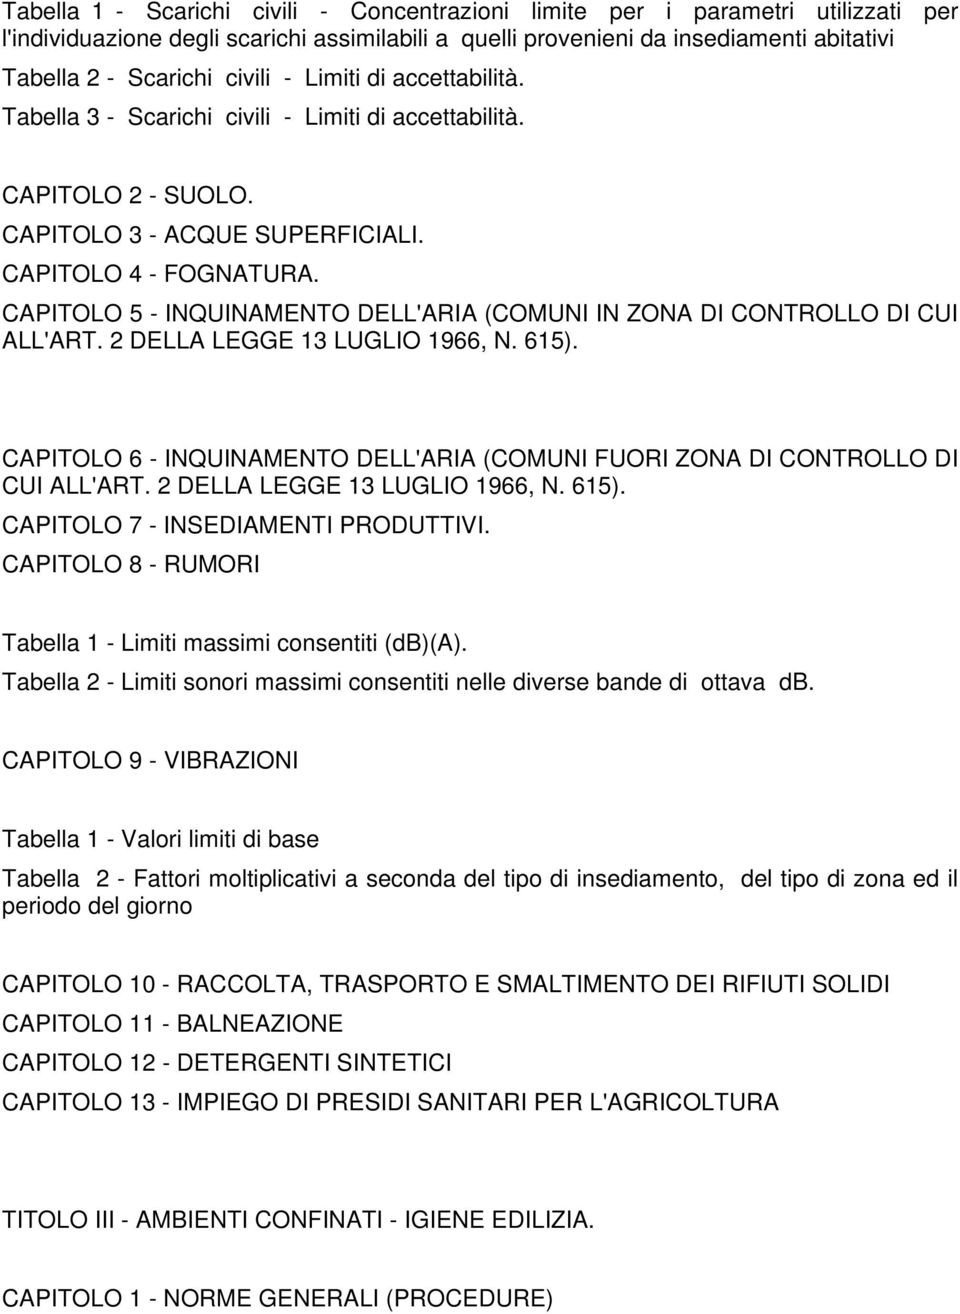 CAPITOLO 5 - INQUINAMENTO DELL'ARIA (COMUNI IN ZONA DI CONTROLLO DI CUI ALL'ART. 2 DELLA LEGGE 13 LUGLIO 1966, N. 615).